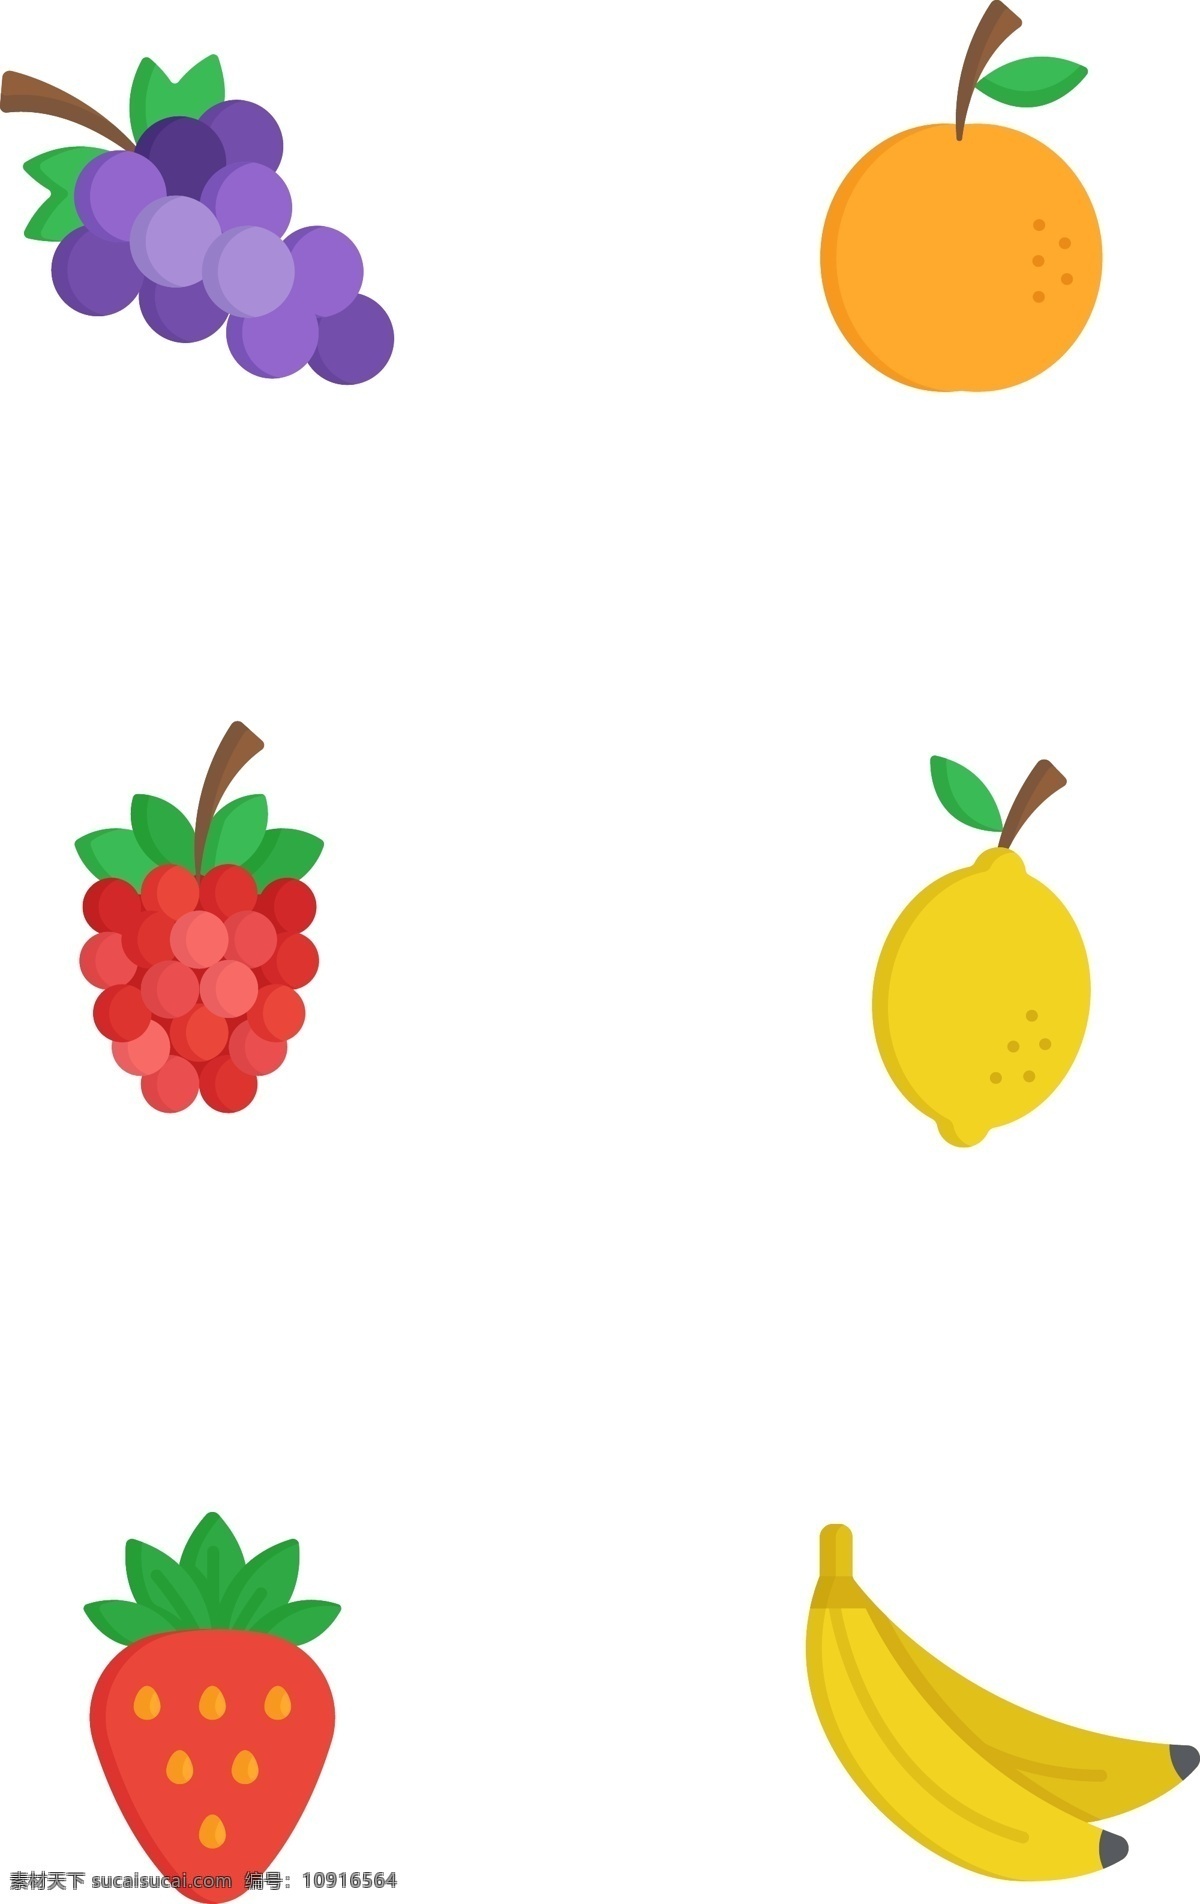 可口 美味 水果 图标 扁平化 拟物 可口的 美味的 葡萄 橙子 柠檬 草莓 香蕉 有趣的 可爱的